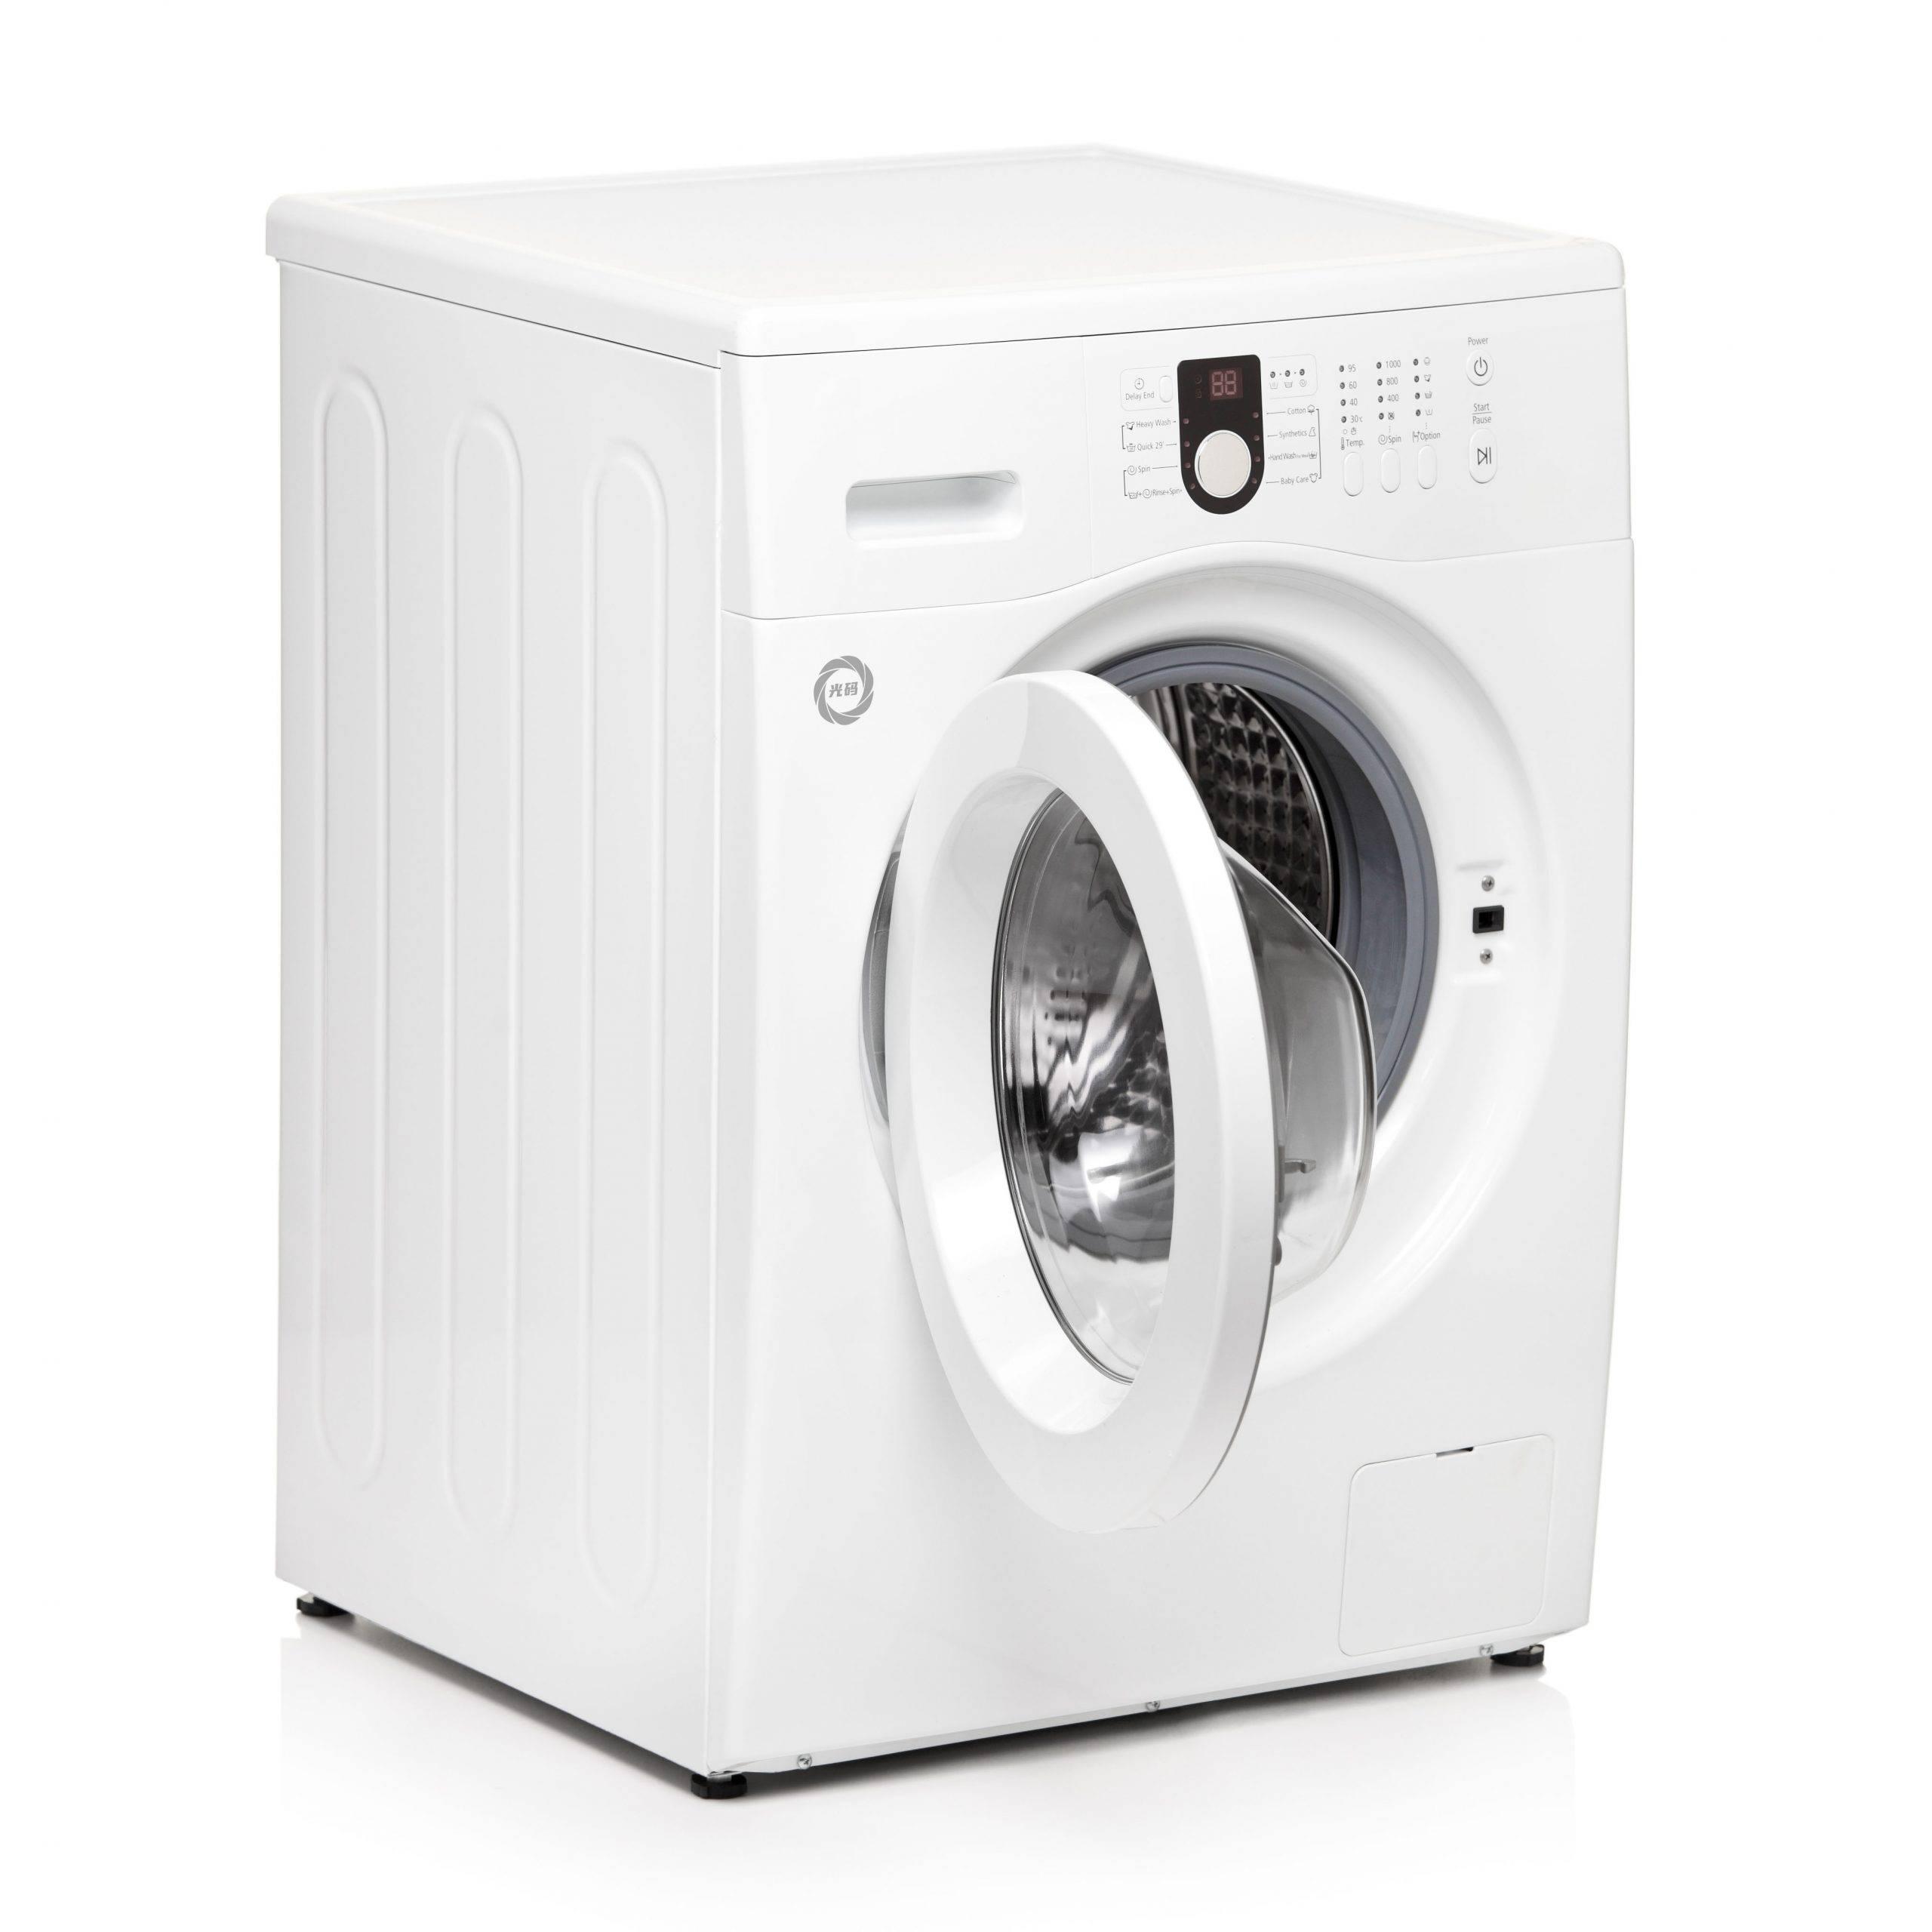 A view of a washing machine